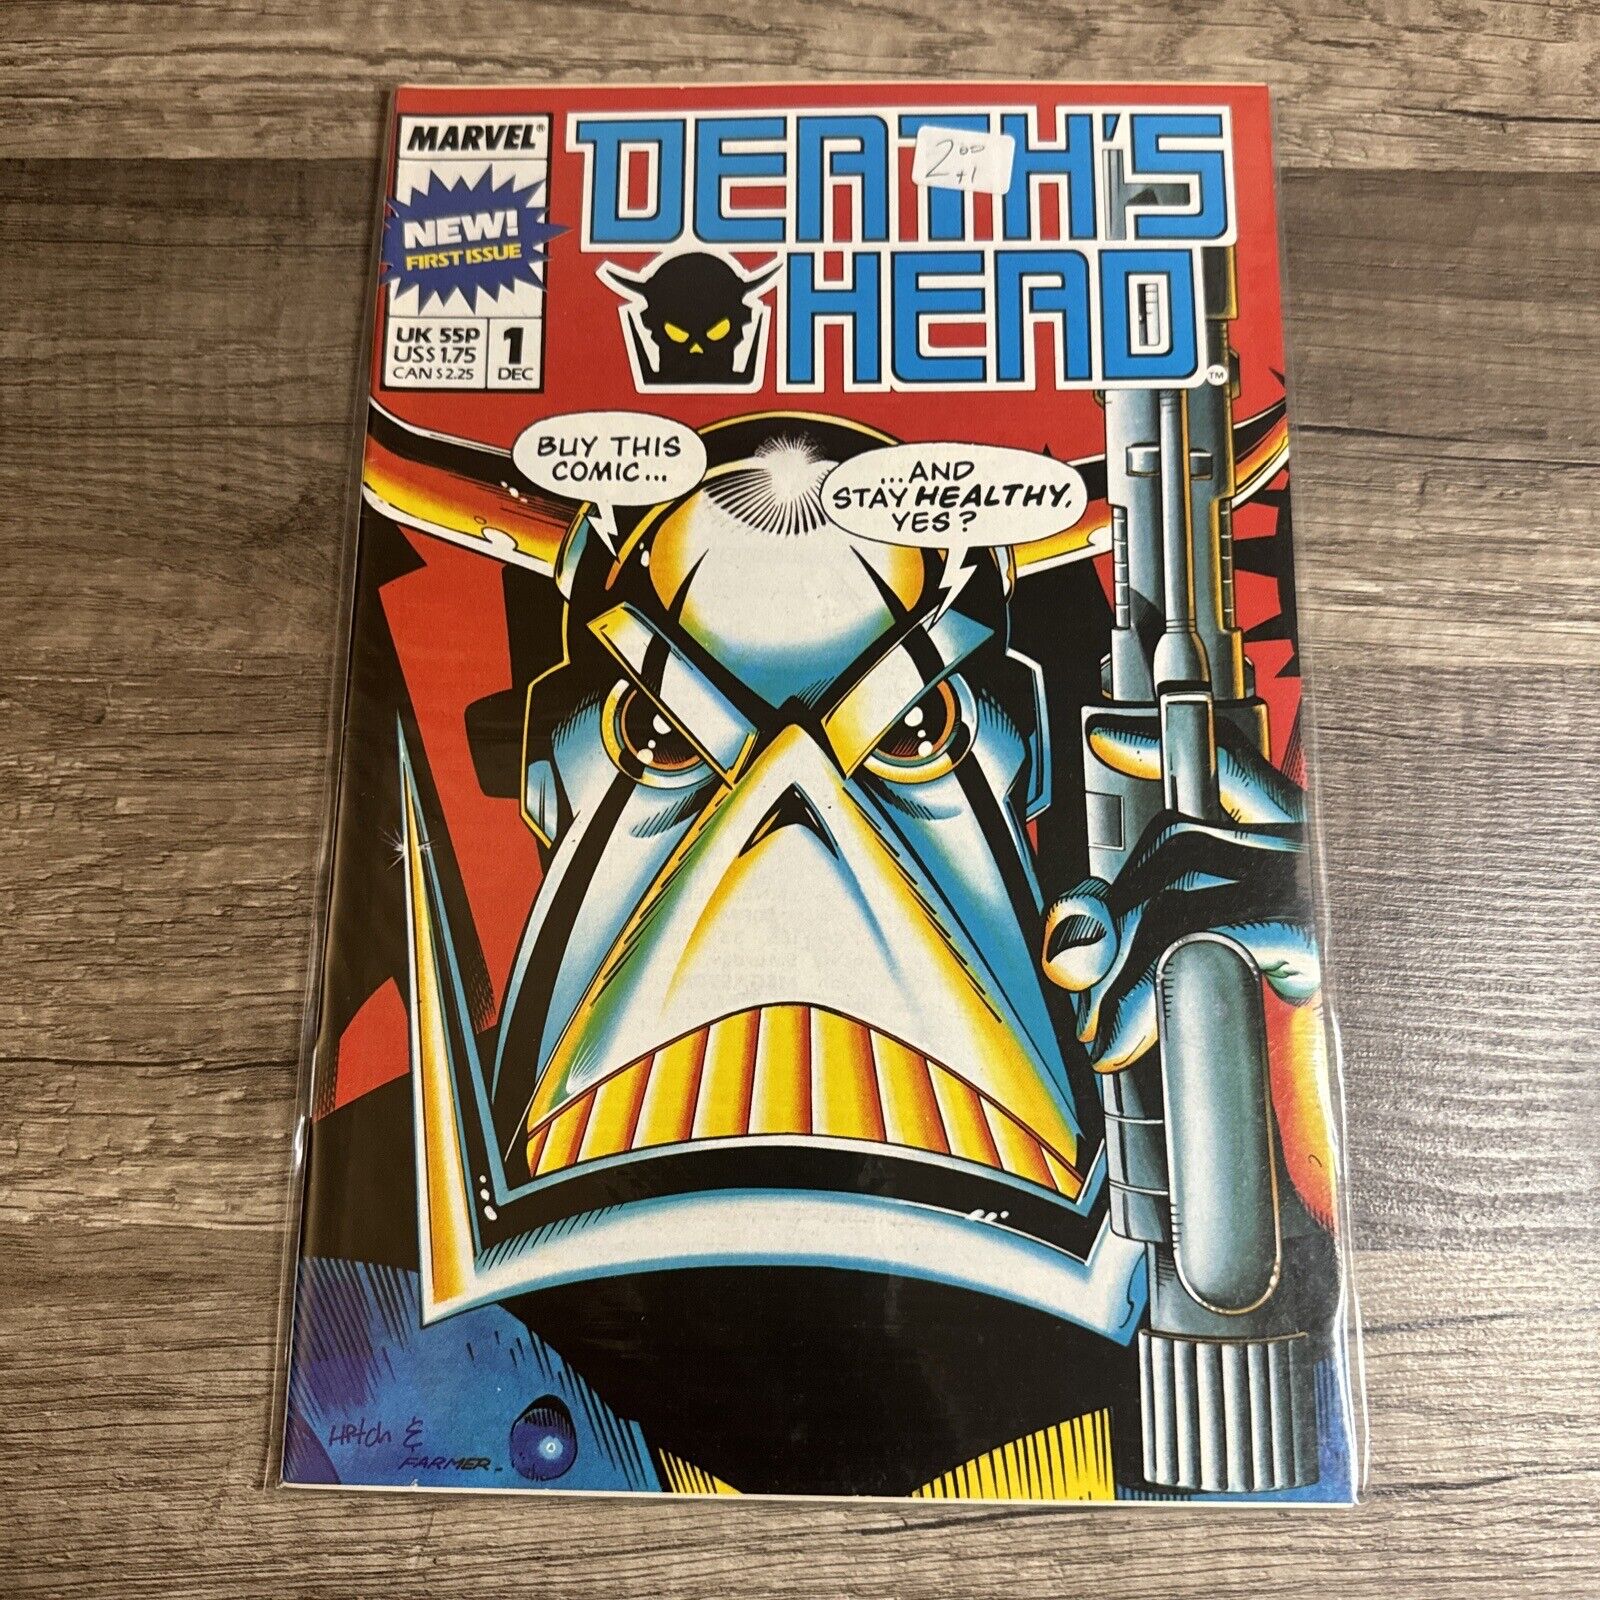 DEATH'S HEAD #1 MARVEL Comics 1988 1st Regular Series